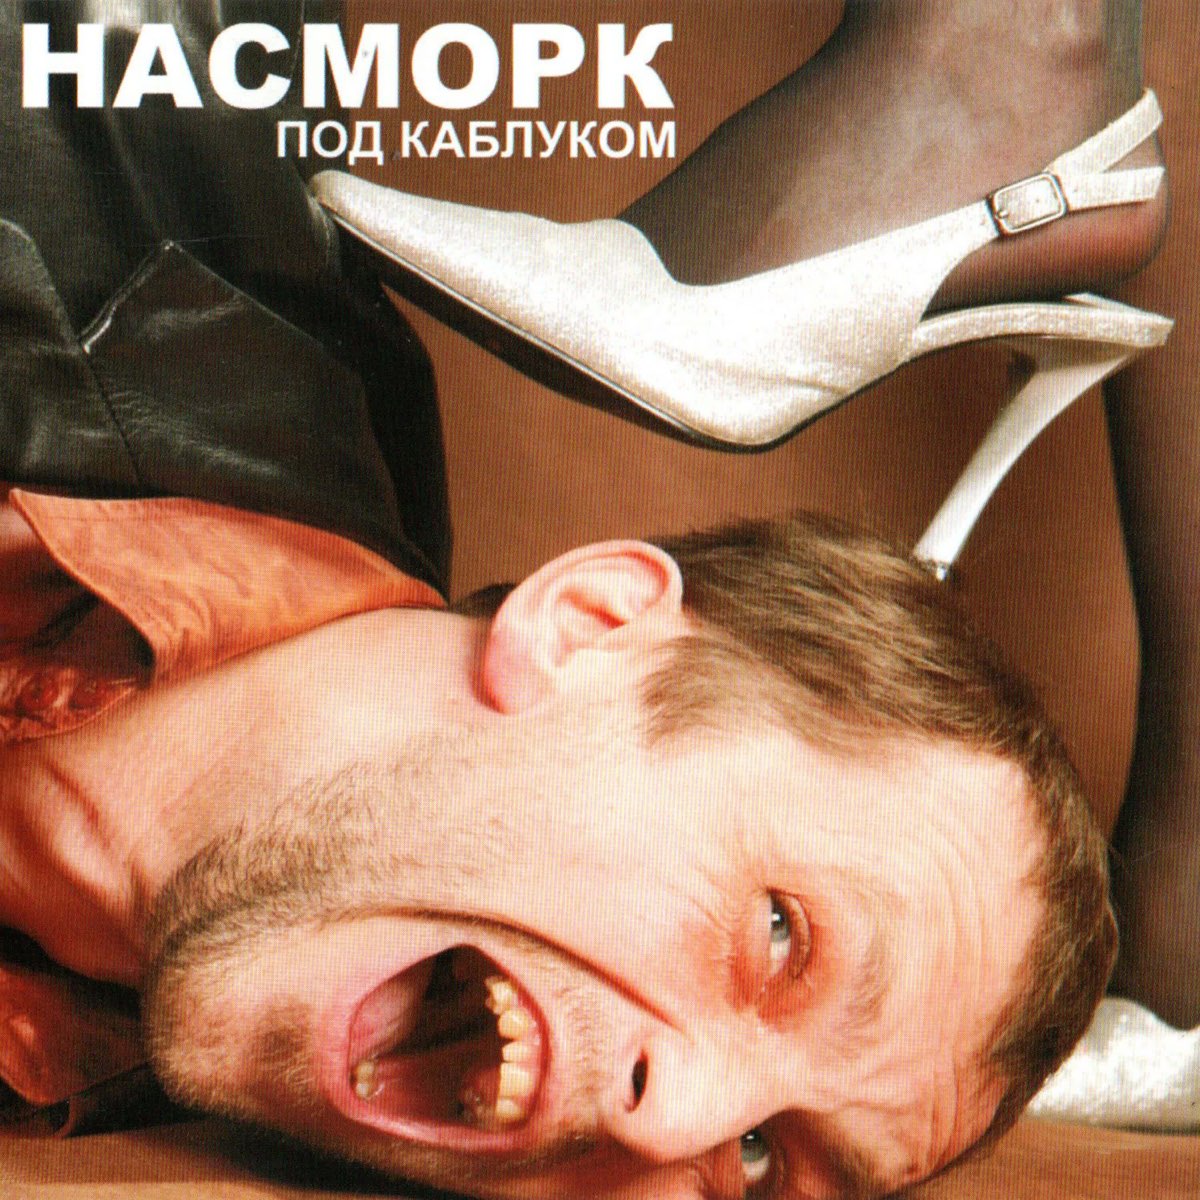 Под каблуком - Album by Насморк - Apple Music